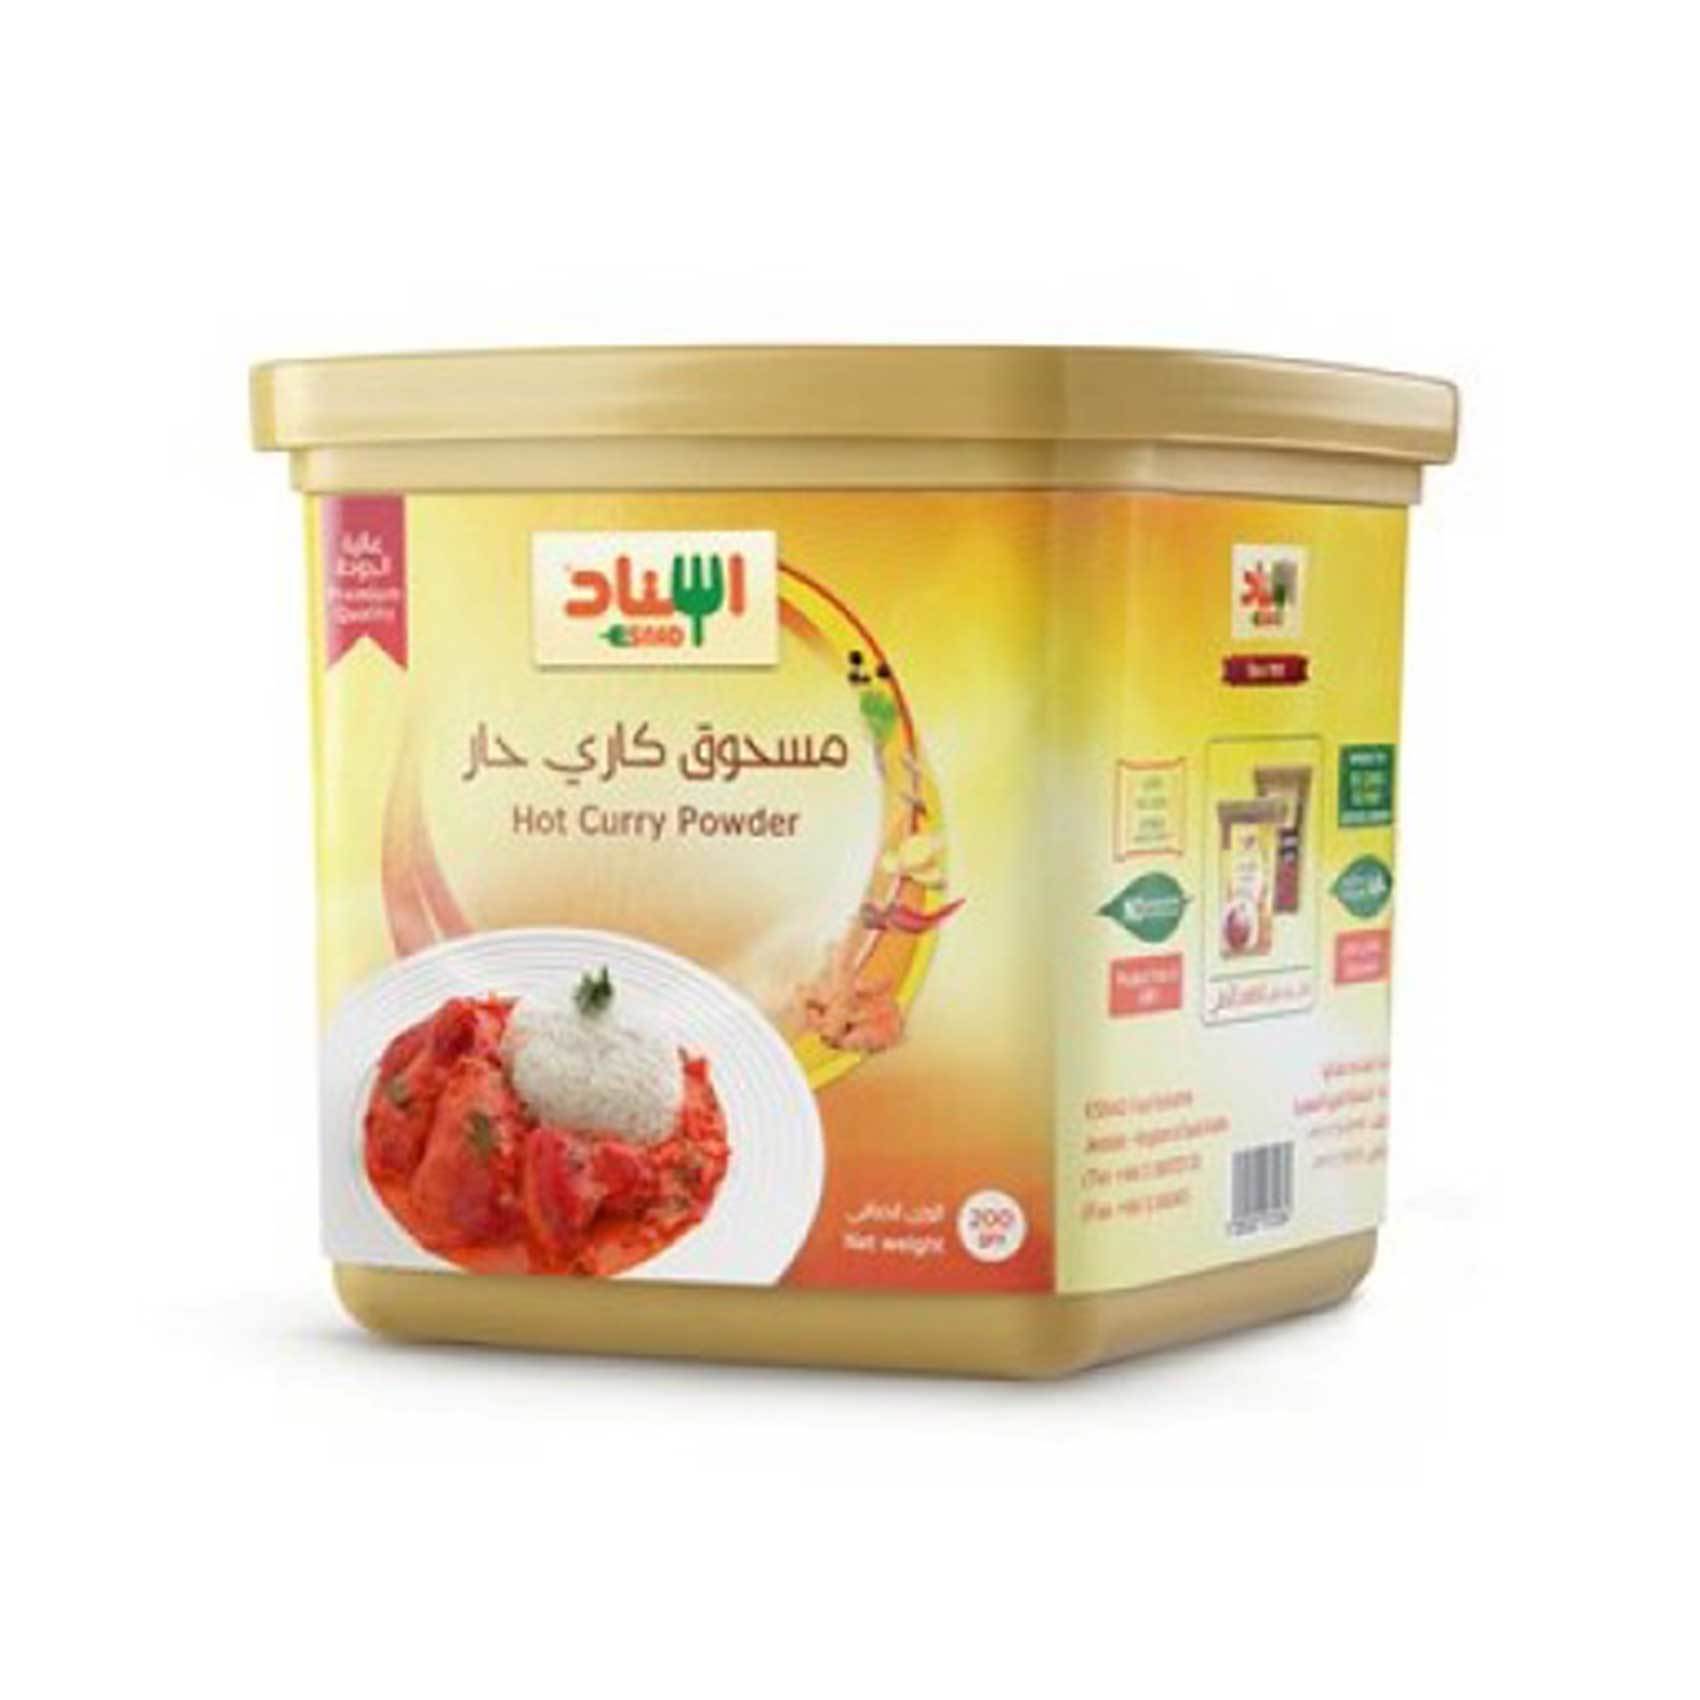 Buy Esnad Hot Curry Powder 200 G Online Shop Food Cupboard On Carrefour Saudi Arabia